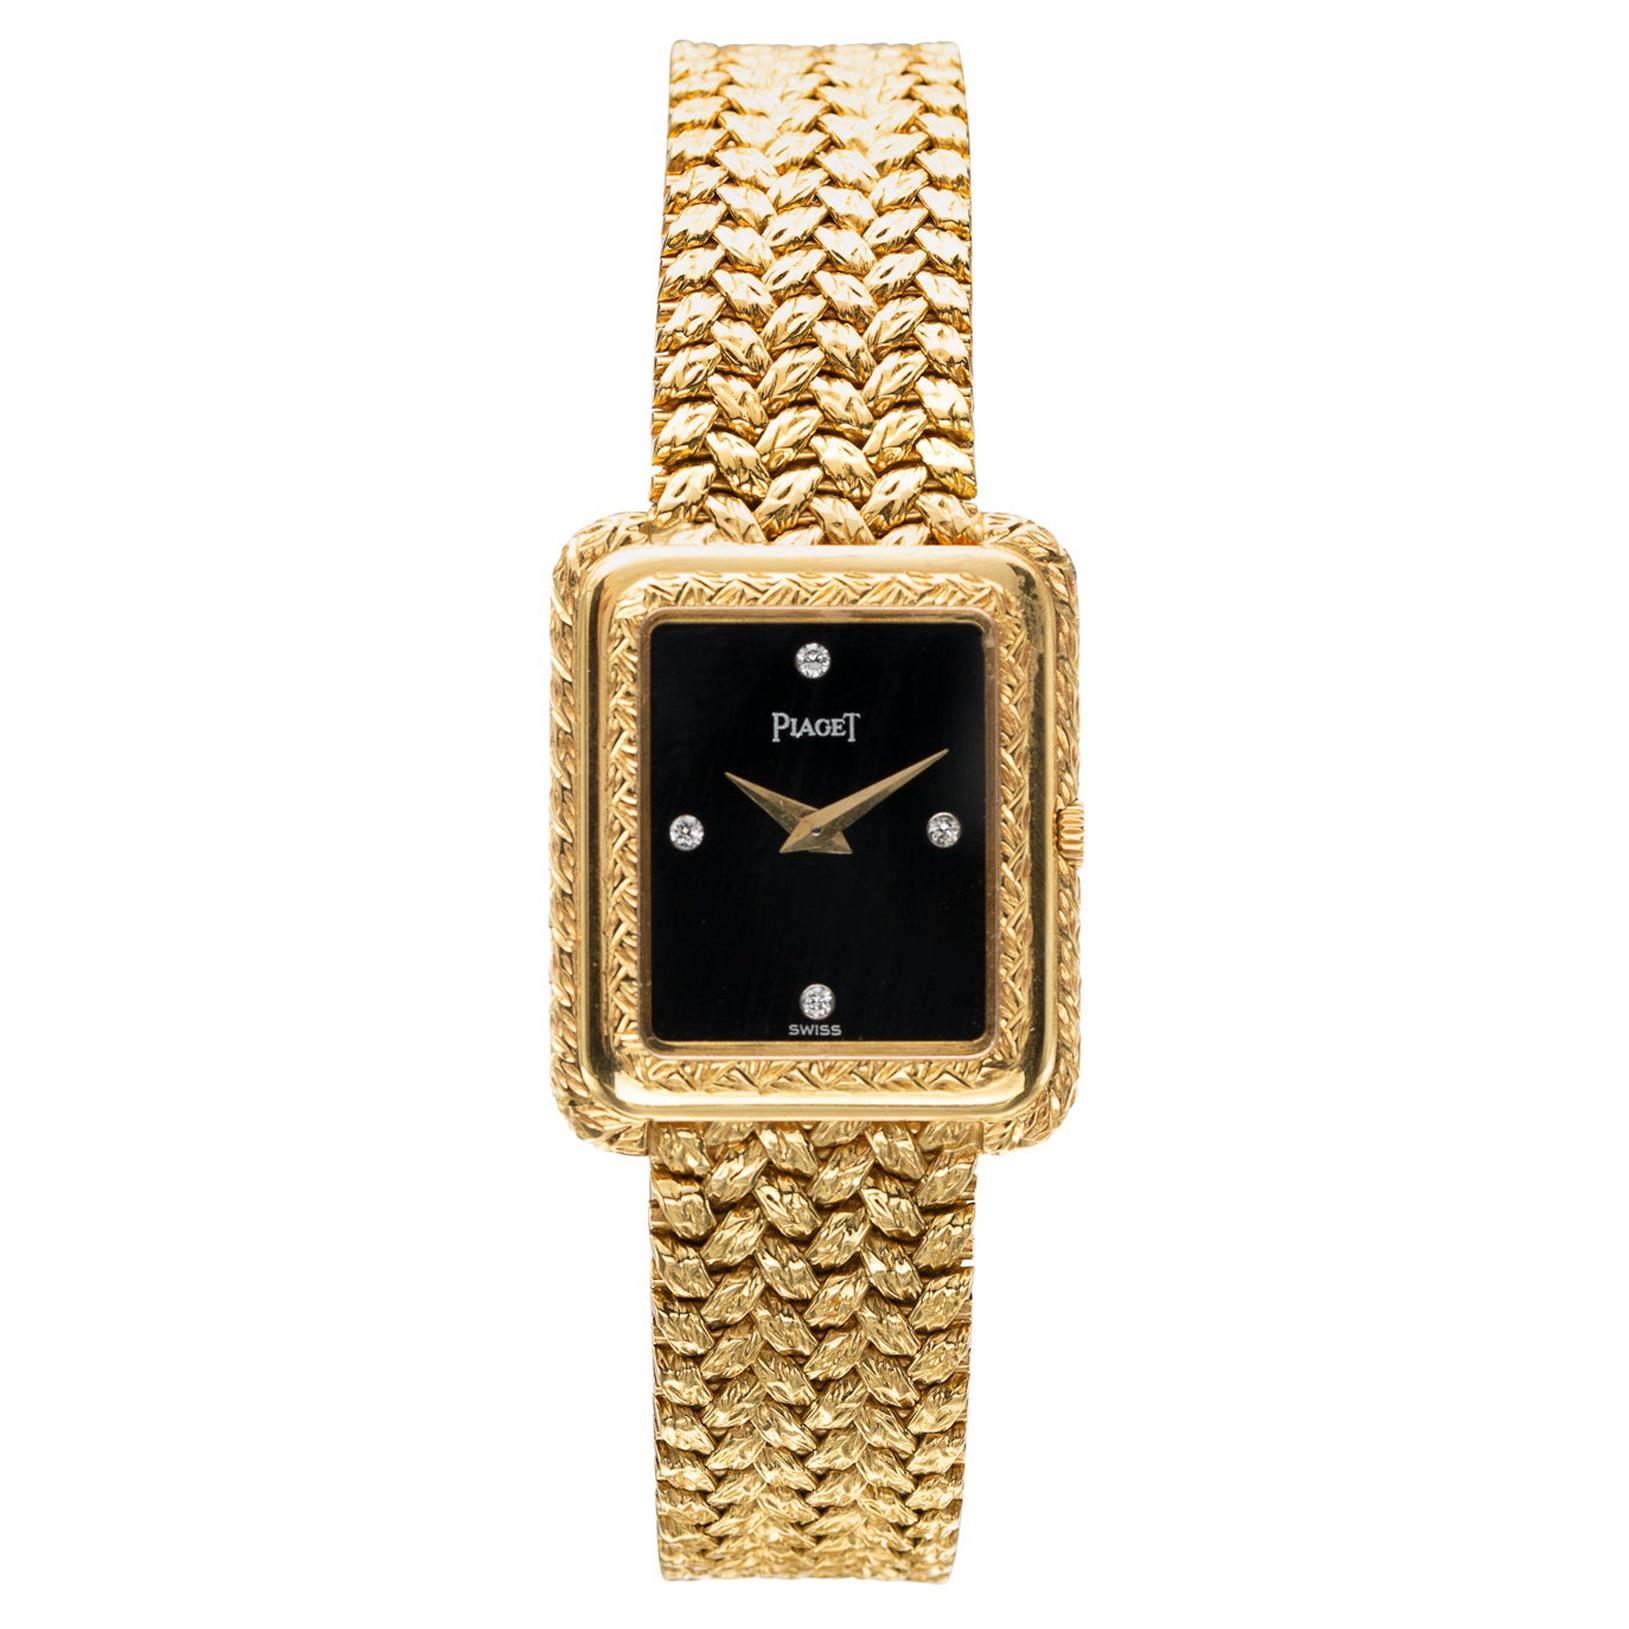 Vintage Piaget 18k Gold Ladies Wristwatch